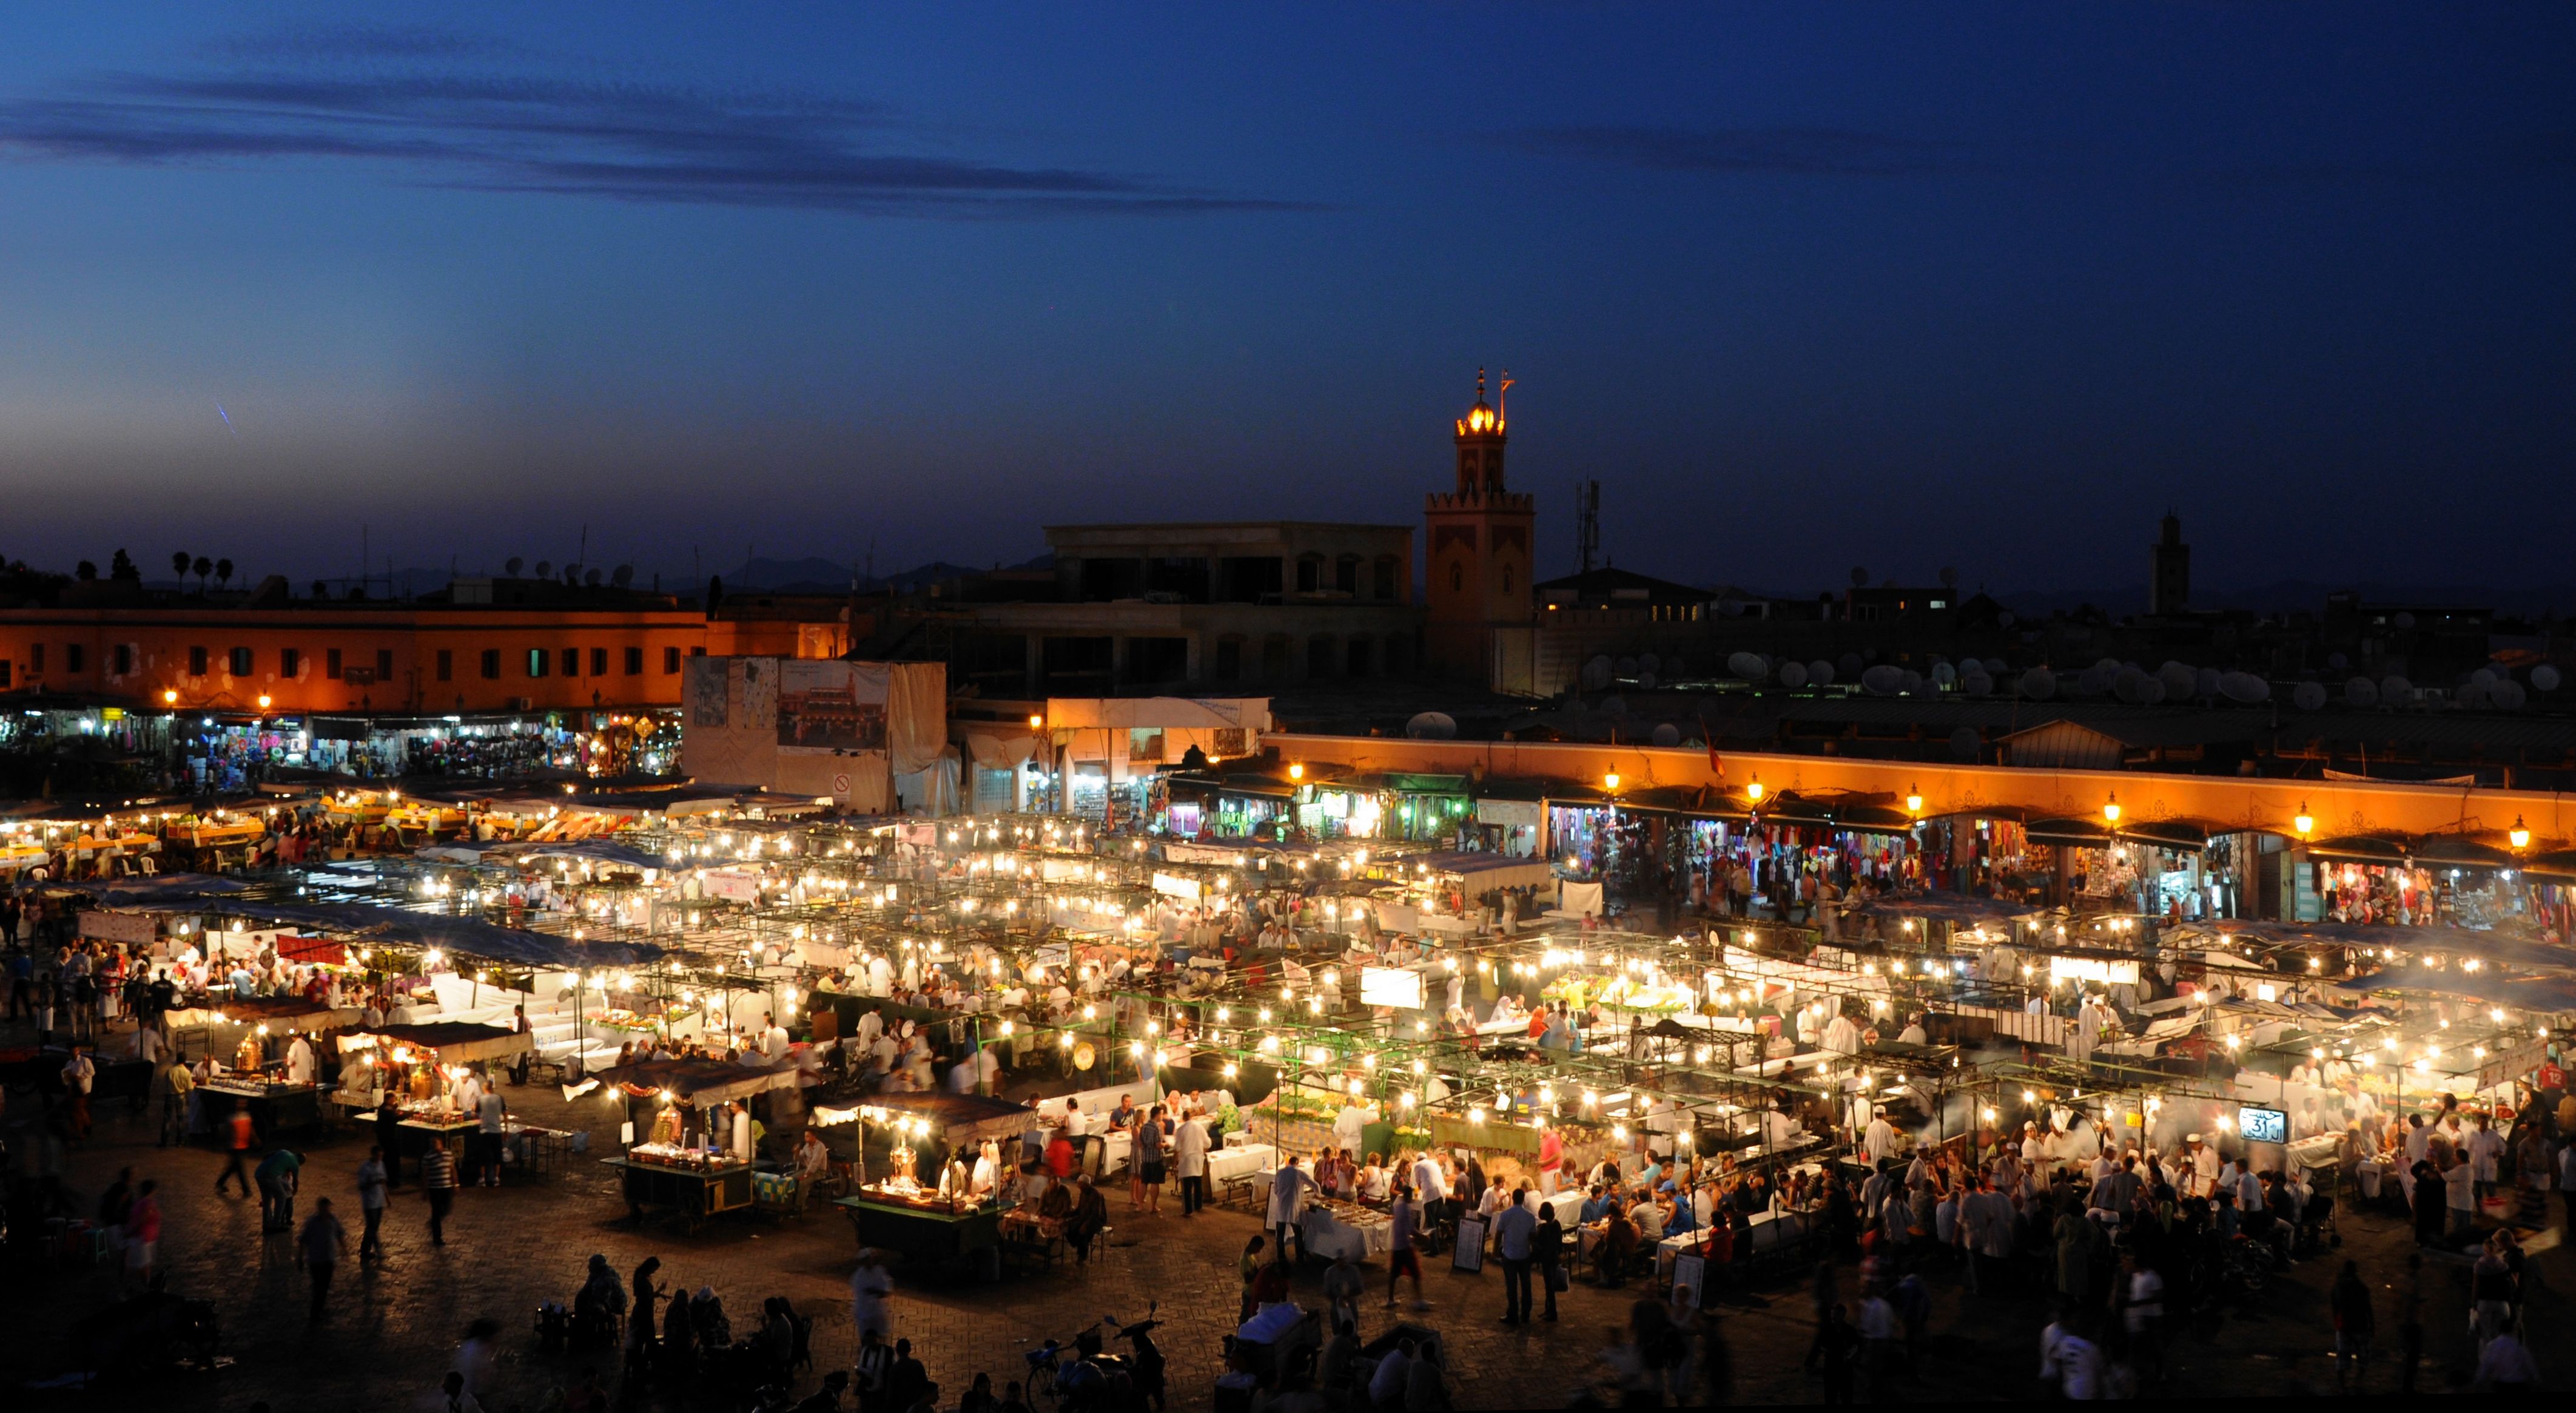 تصویر زمینه انرژی بخش بازار شلوغ مراکش در شب 2023